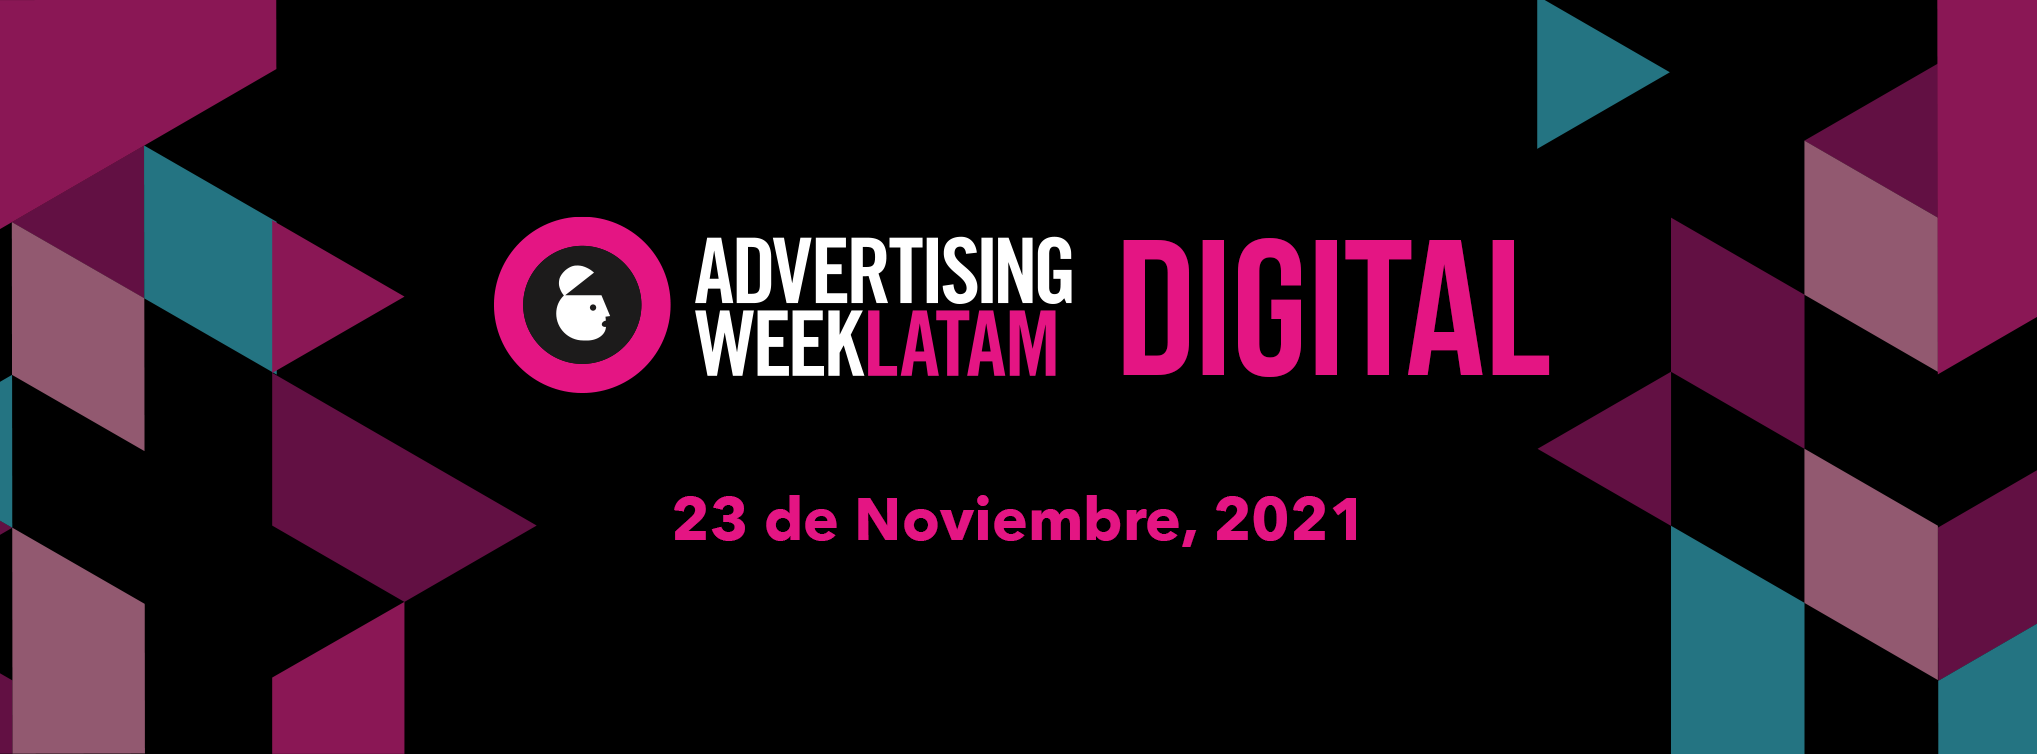 AWLATAM 2021, evento de la industria publicitaria y creativa, se llevará en la CDMX en formato virtual